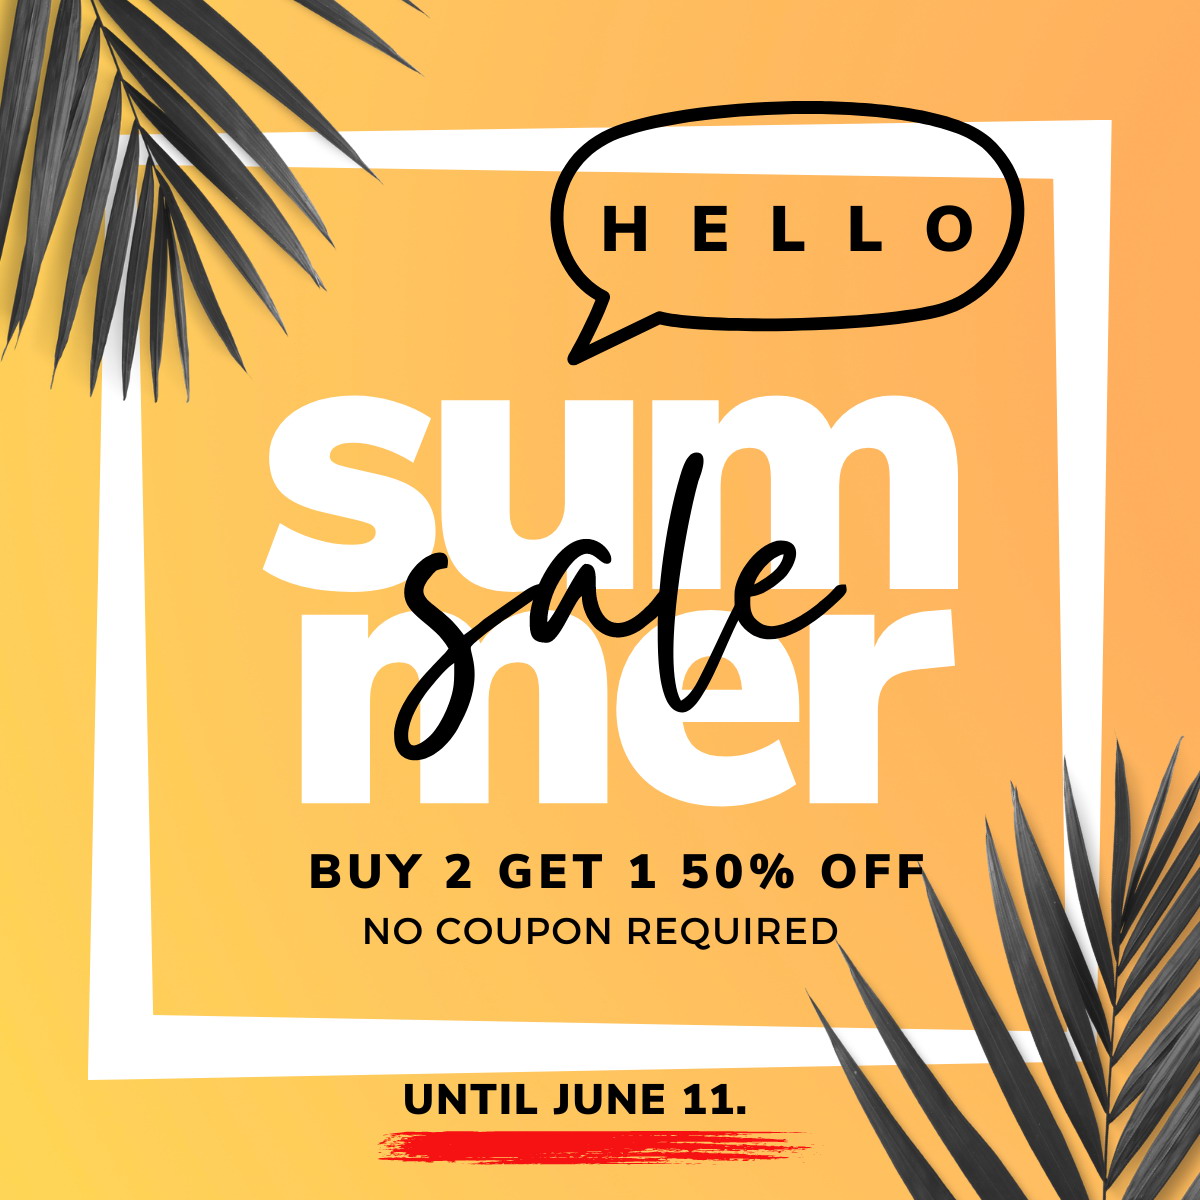 Fionaaccessories.com hello summer sale buy 2 get 1 50% off due June 31,2023.